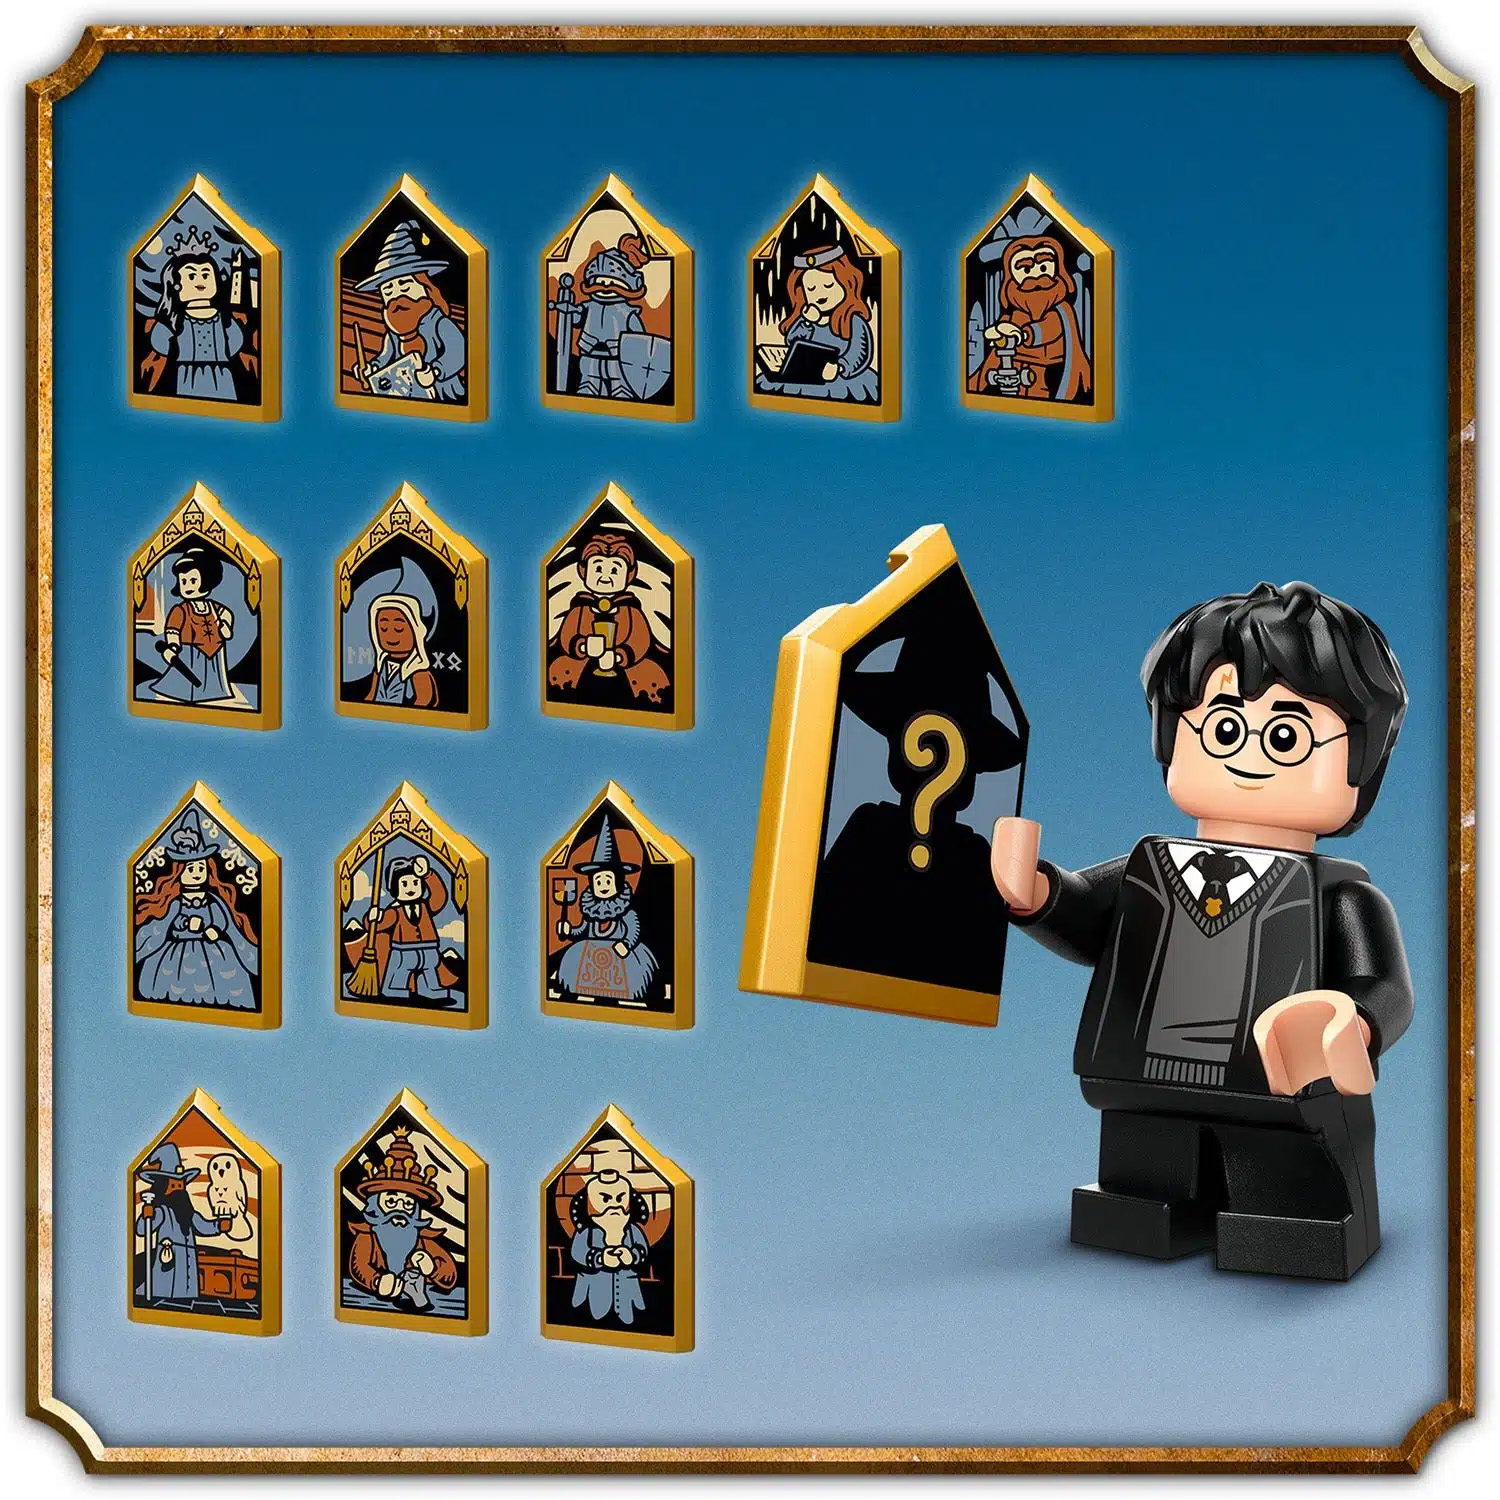 Nouveautés LEGO Harry Potter 2022 : trois nouveaux sets en ligne sur le  Shop officiel - HelloBricks